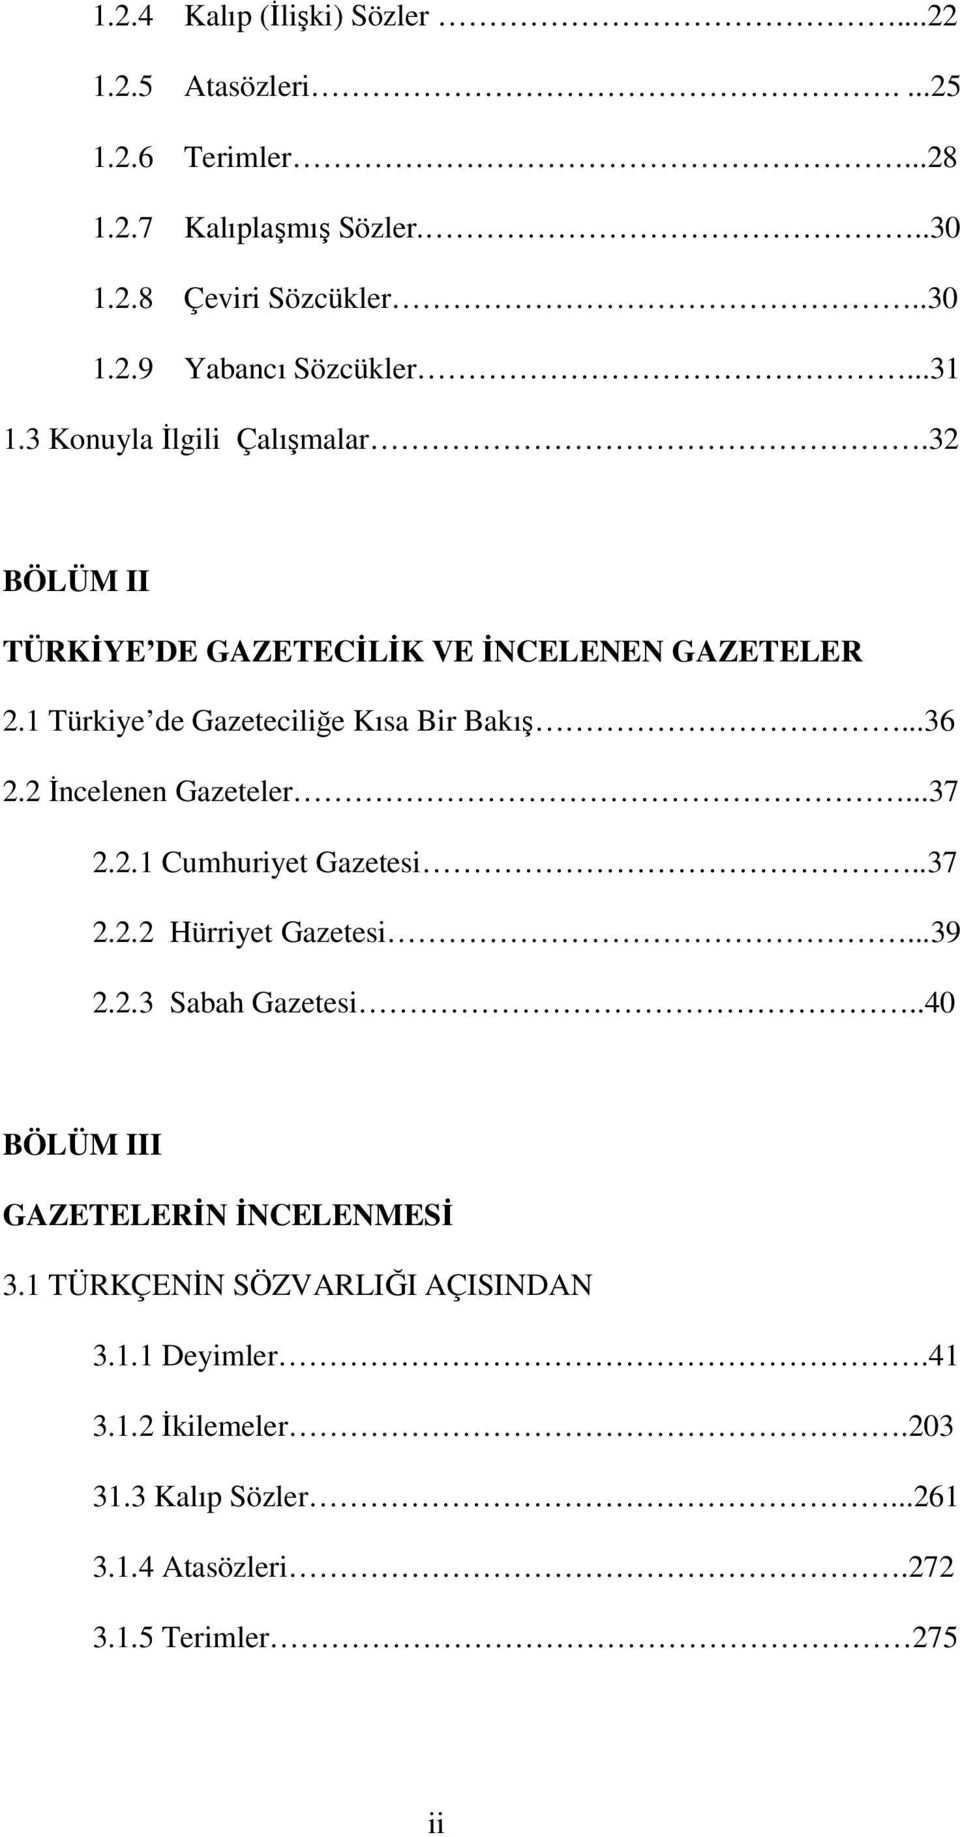 2 İncelenen Gazeteler...37 2.2.1 Cumhuriyet Gazetesi..37 2.2.2 Hürriyet Gazetesi...39 2.2.3 Sabah Gazetesi..40 BÖLÜM III GAZETELERİN İNCELENMESİ 3.